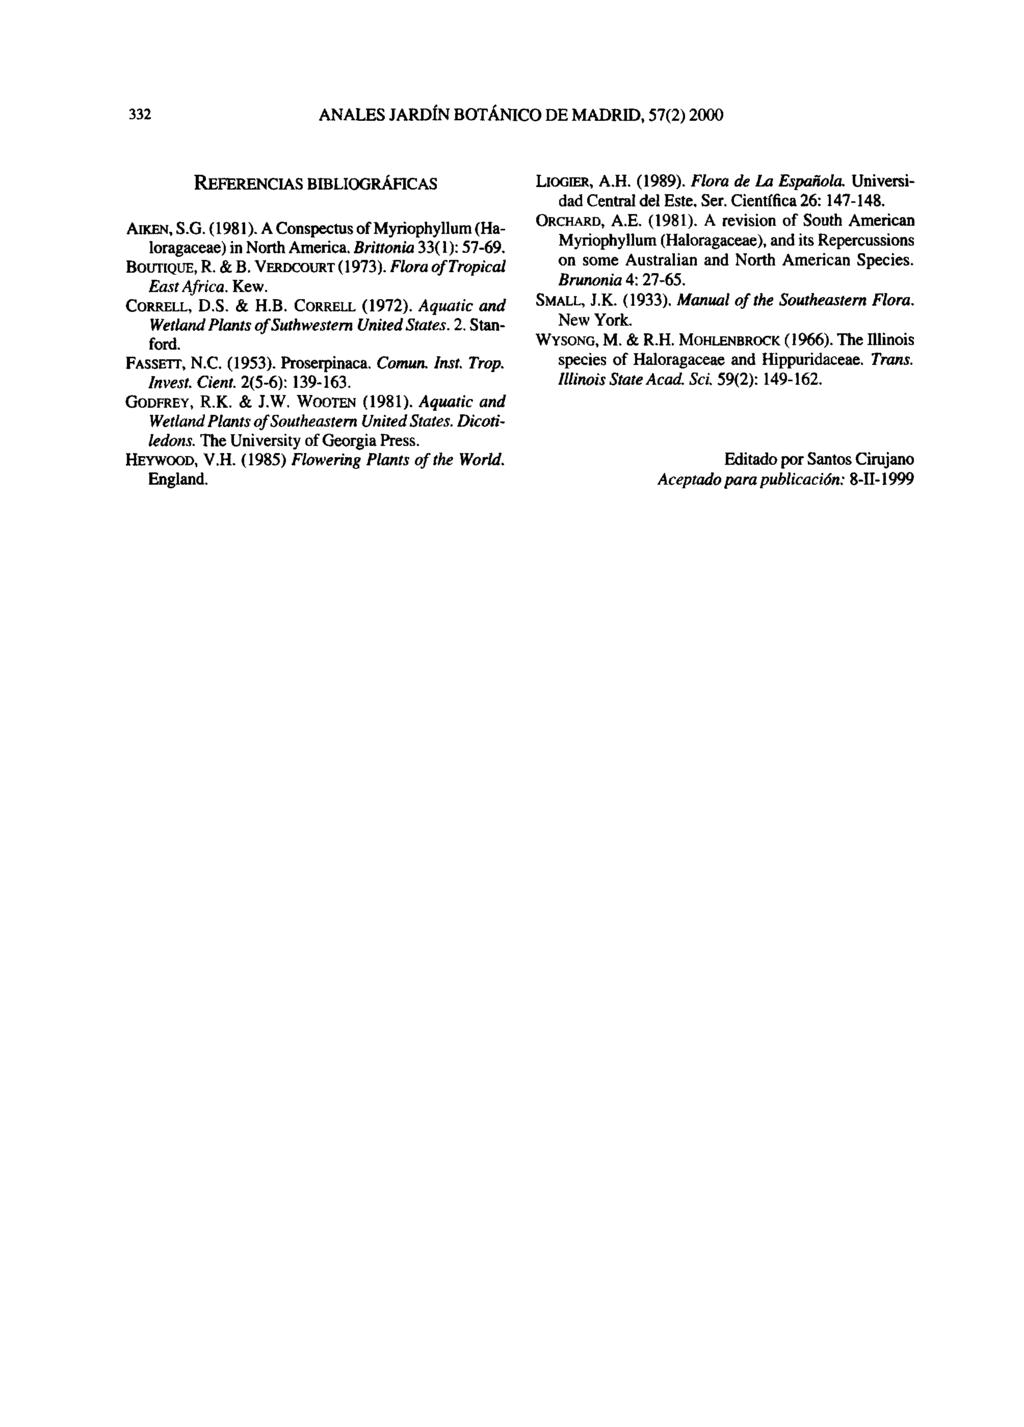 332 ANALES JARDÍN BOTÁNICO DE MADRID, 57(2) 2000 REFERENCIAS BIBLIOGRÁFICAS AKEN, S.G. (1981). A Conspectus of Myriophyllum (Haloragaceae) in North America. Brittonia 33(1): 57-69. BOUTIQUE, R. & B.